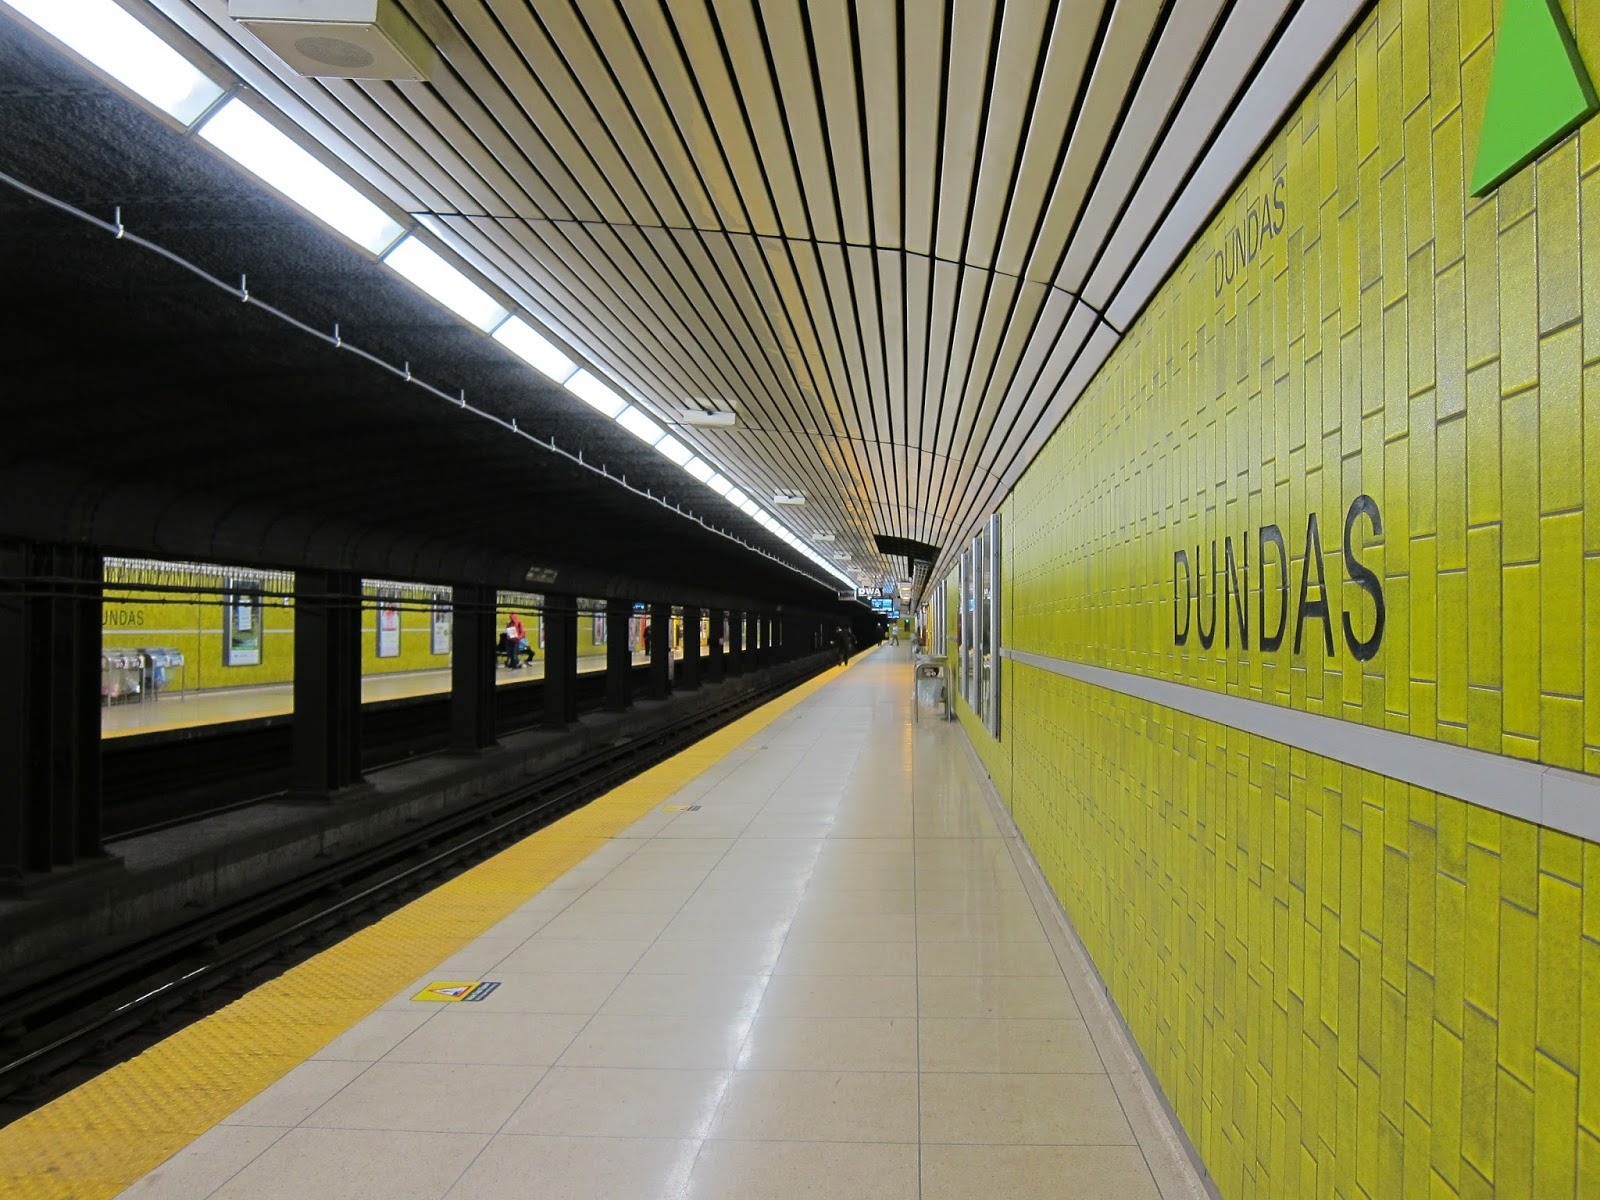 Dundas station platform view